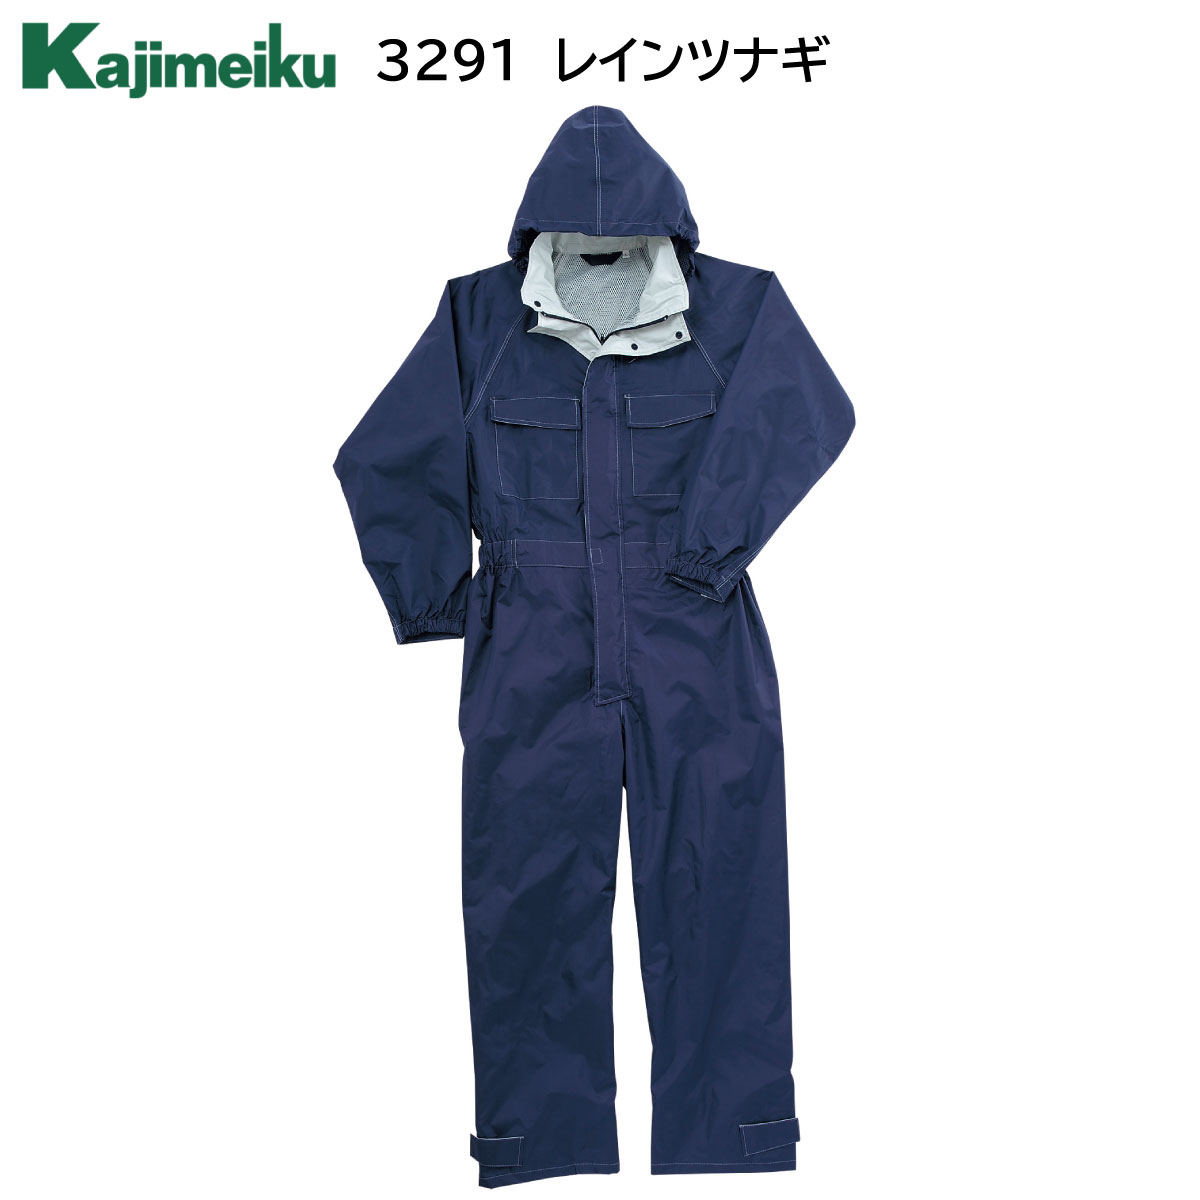 レインツナギ 3291 M〜4L カジメイク Kajimeiku ネイビー